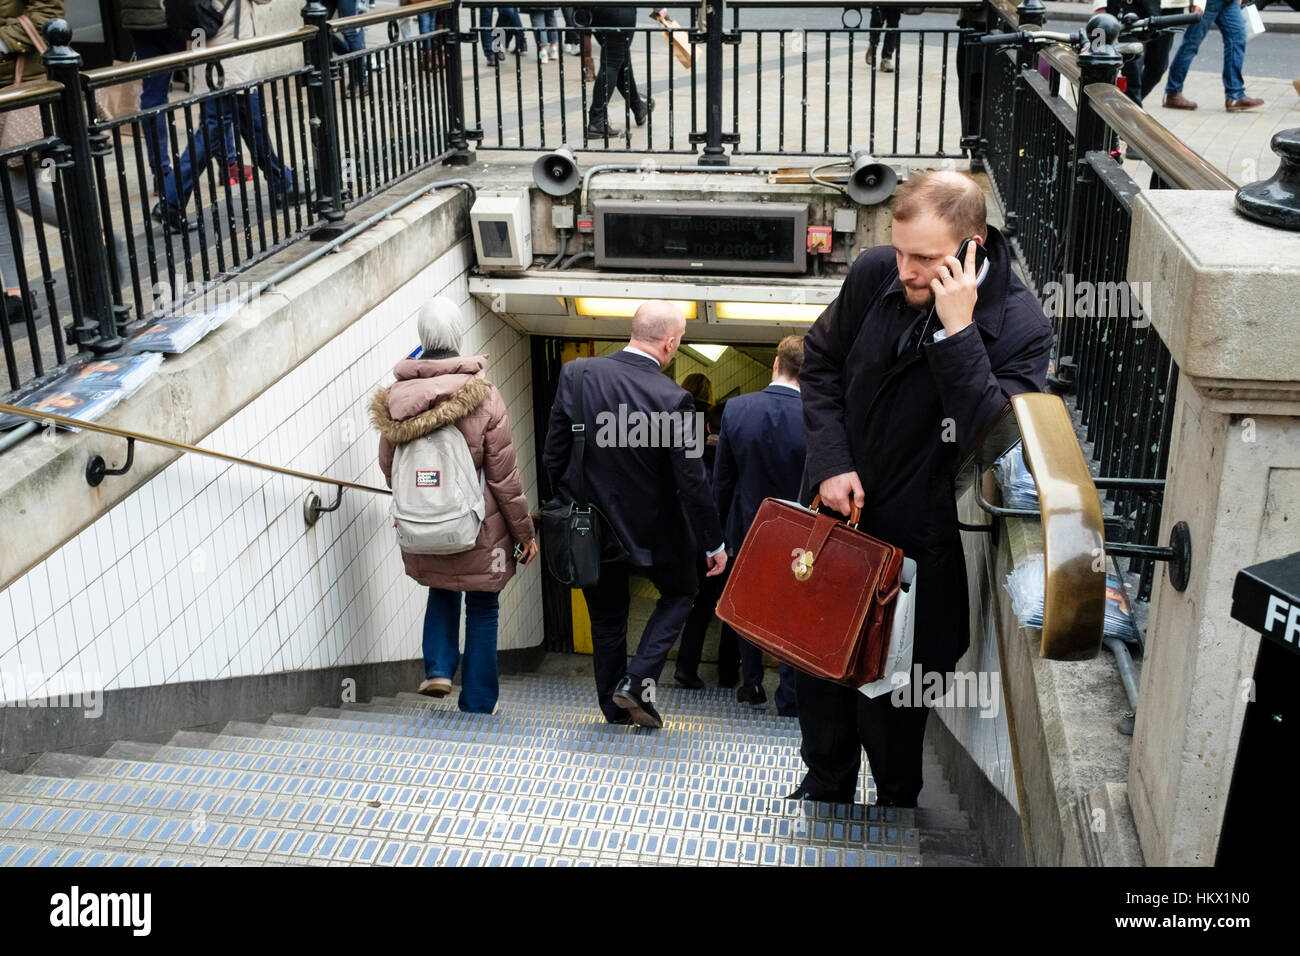 Uomo con valigetta in pelle parla al telefono cellulare in entrata a Oxford Circus la stazione della metropolitana di Londra. Regno Unito Foto Stock